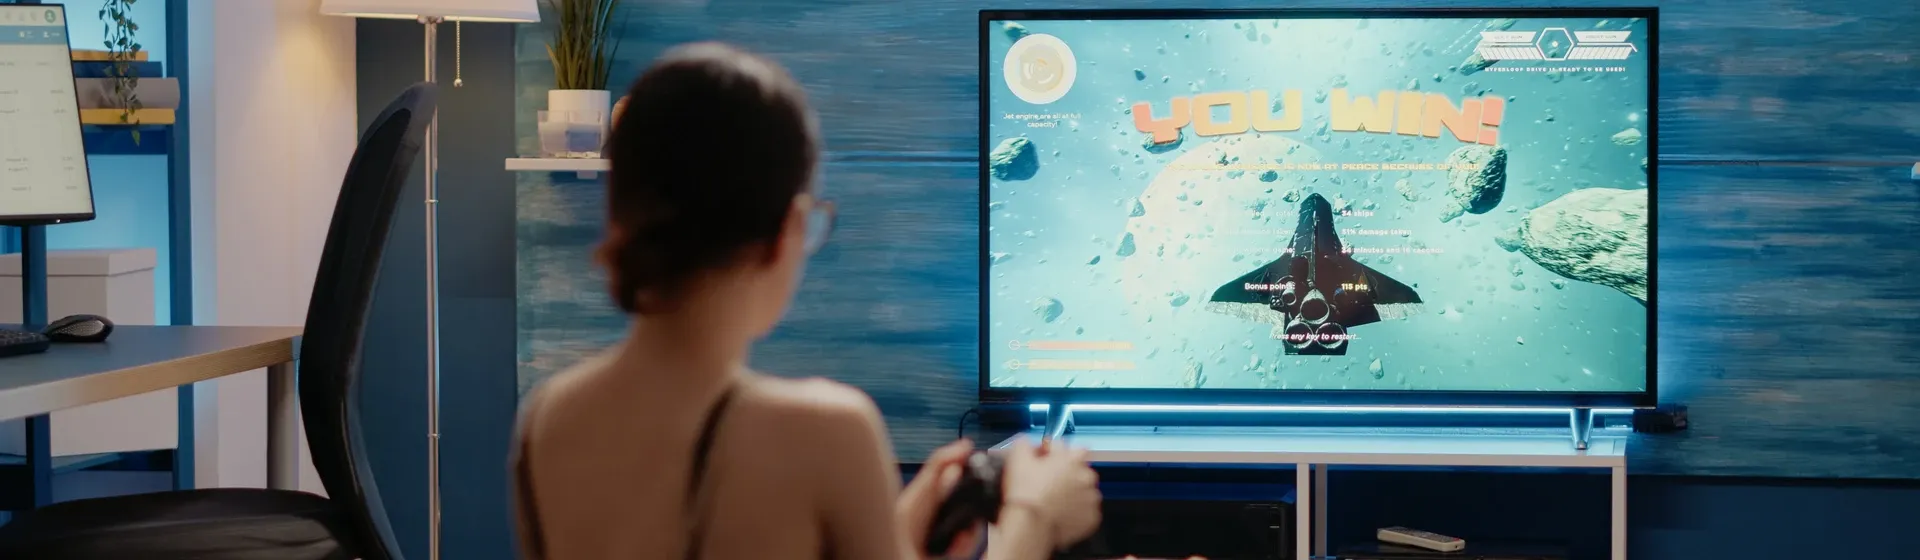 Mulher branca em uma sala de estar jogando videogame em uma TV gamer